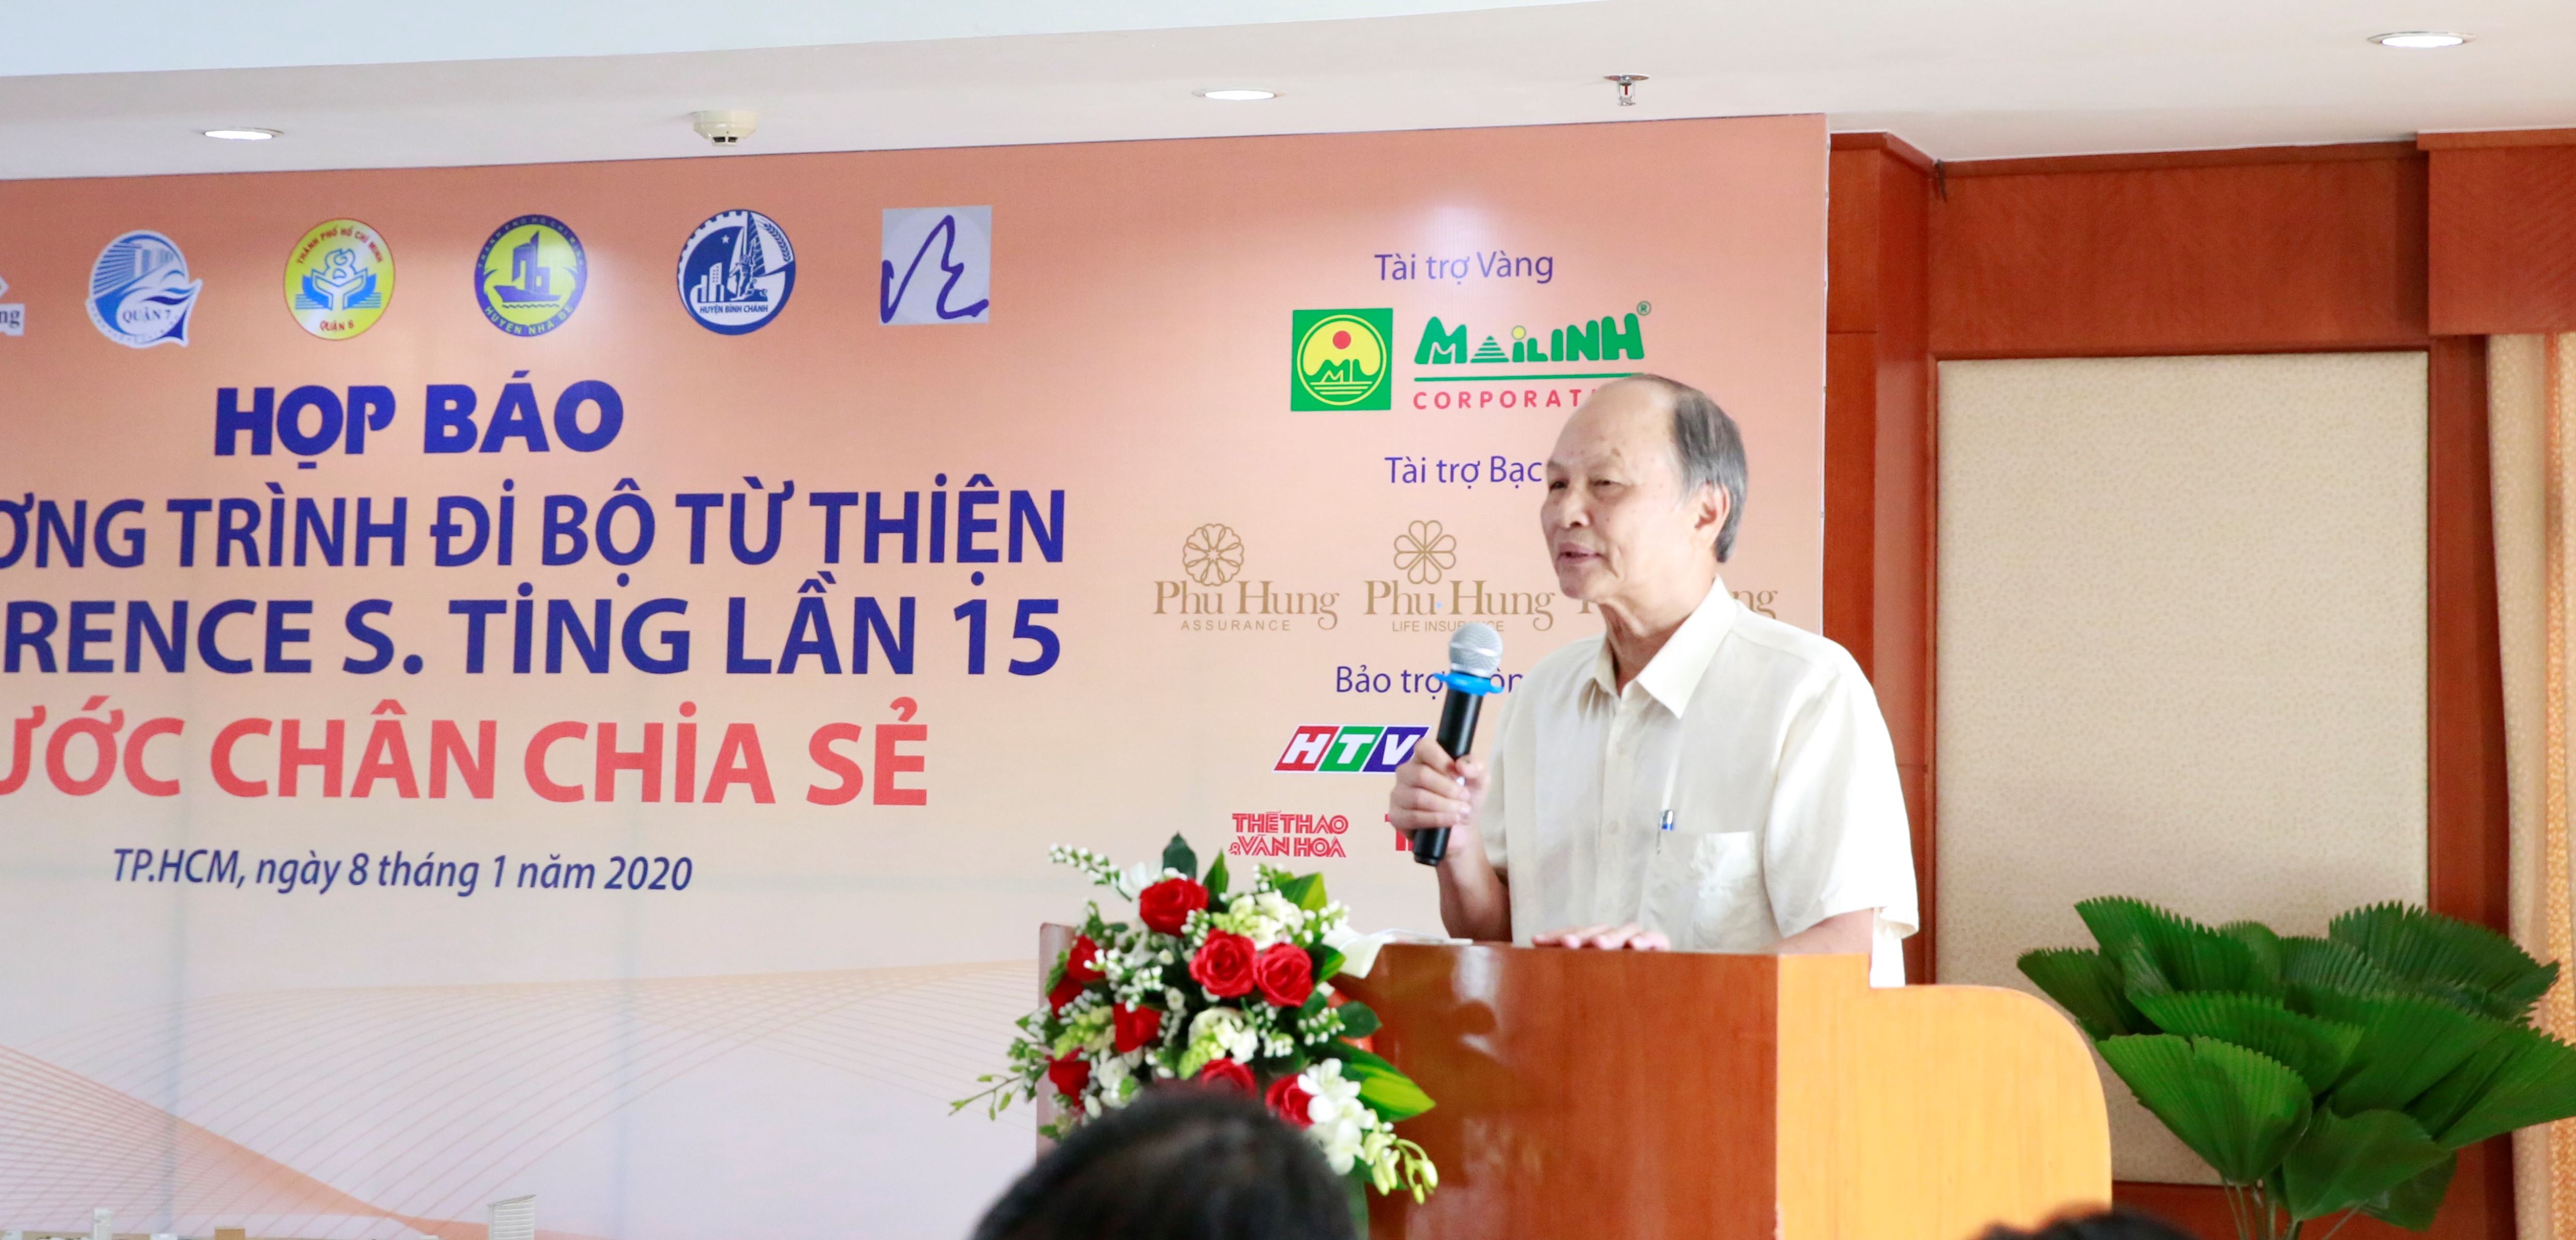 Ông Phan Chánh Dương - giám đốc quỹ hỗ trợ cộng đồng Lawrenxe S.ting tri ân những tấm lòng thiện nguyện đã đồng hành cùng chương trình 15 năm qua.